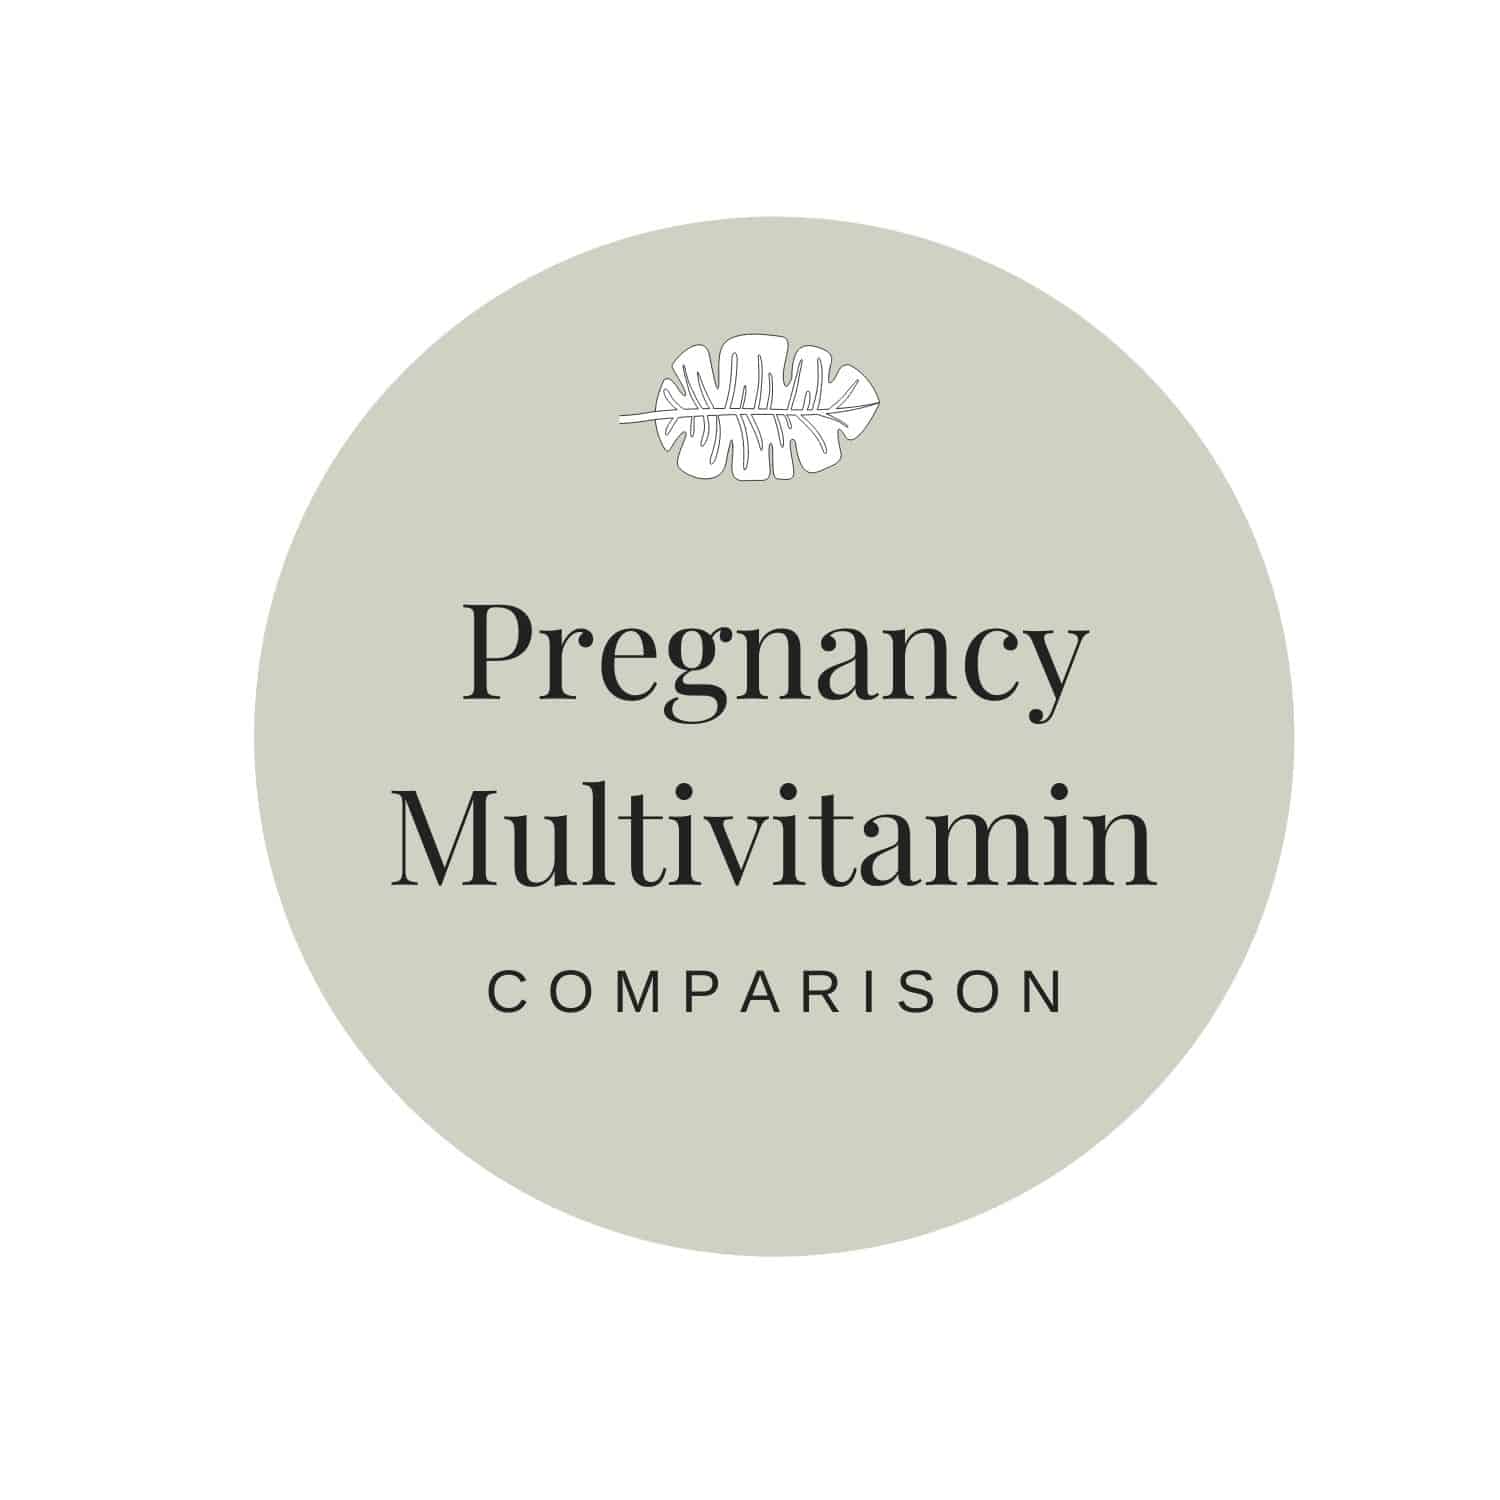 Pregnancy Multivitamin Comparison